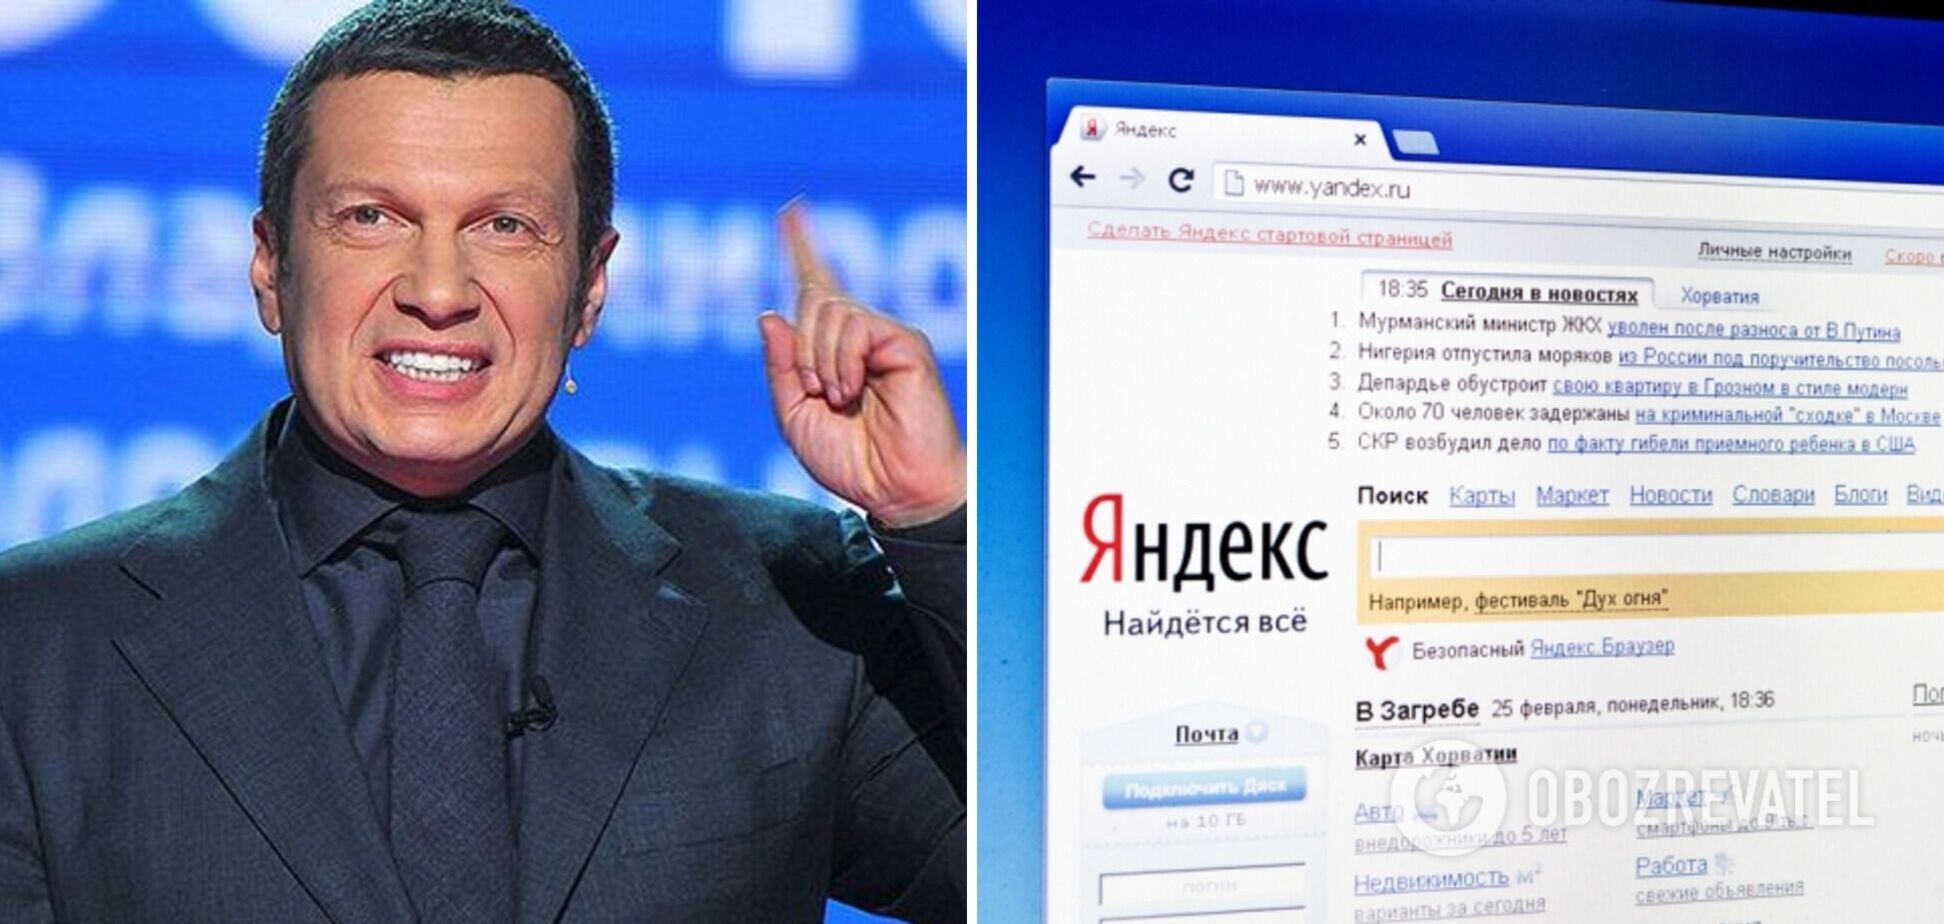 'Тварюки ви': Соловйов влаштував істерику через 'ярлик', який дав йому пошуковик 'Яндекс'. Відео 